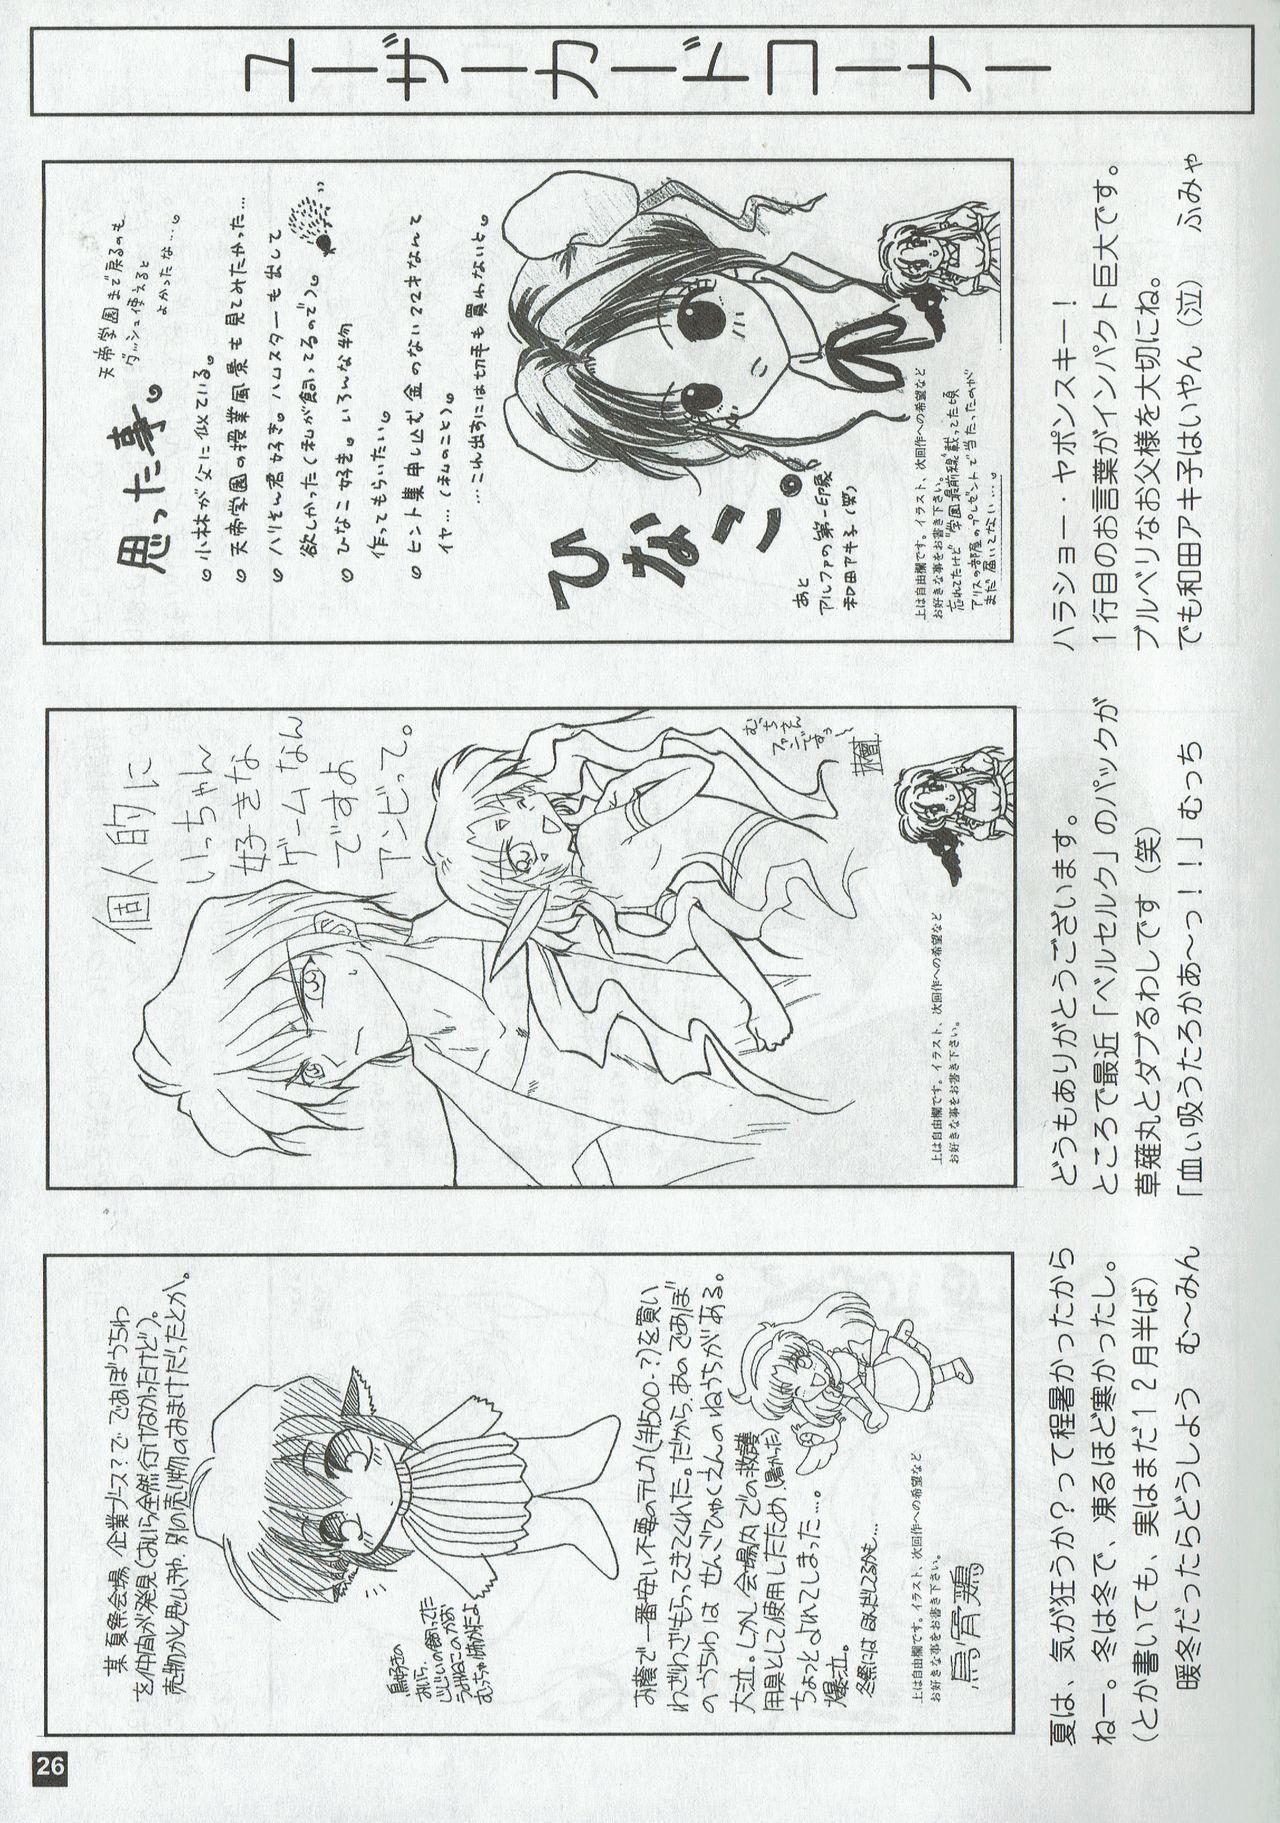 Arisu no Denchi Bakudan Vol. 03 25